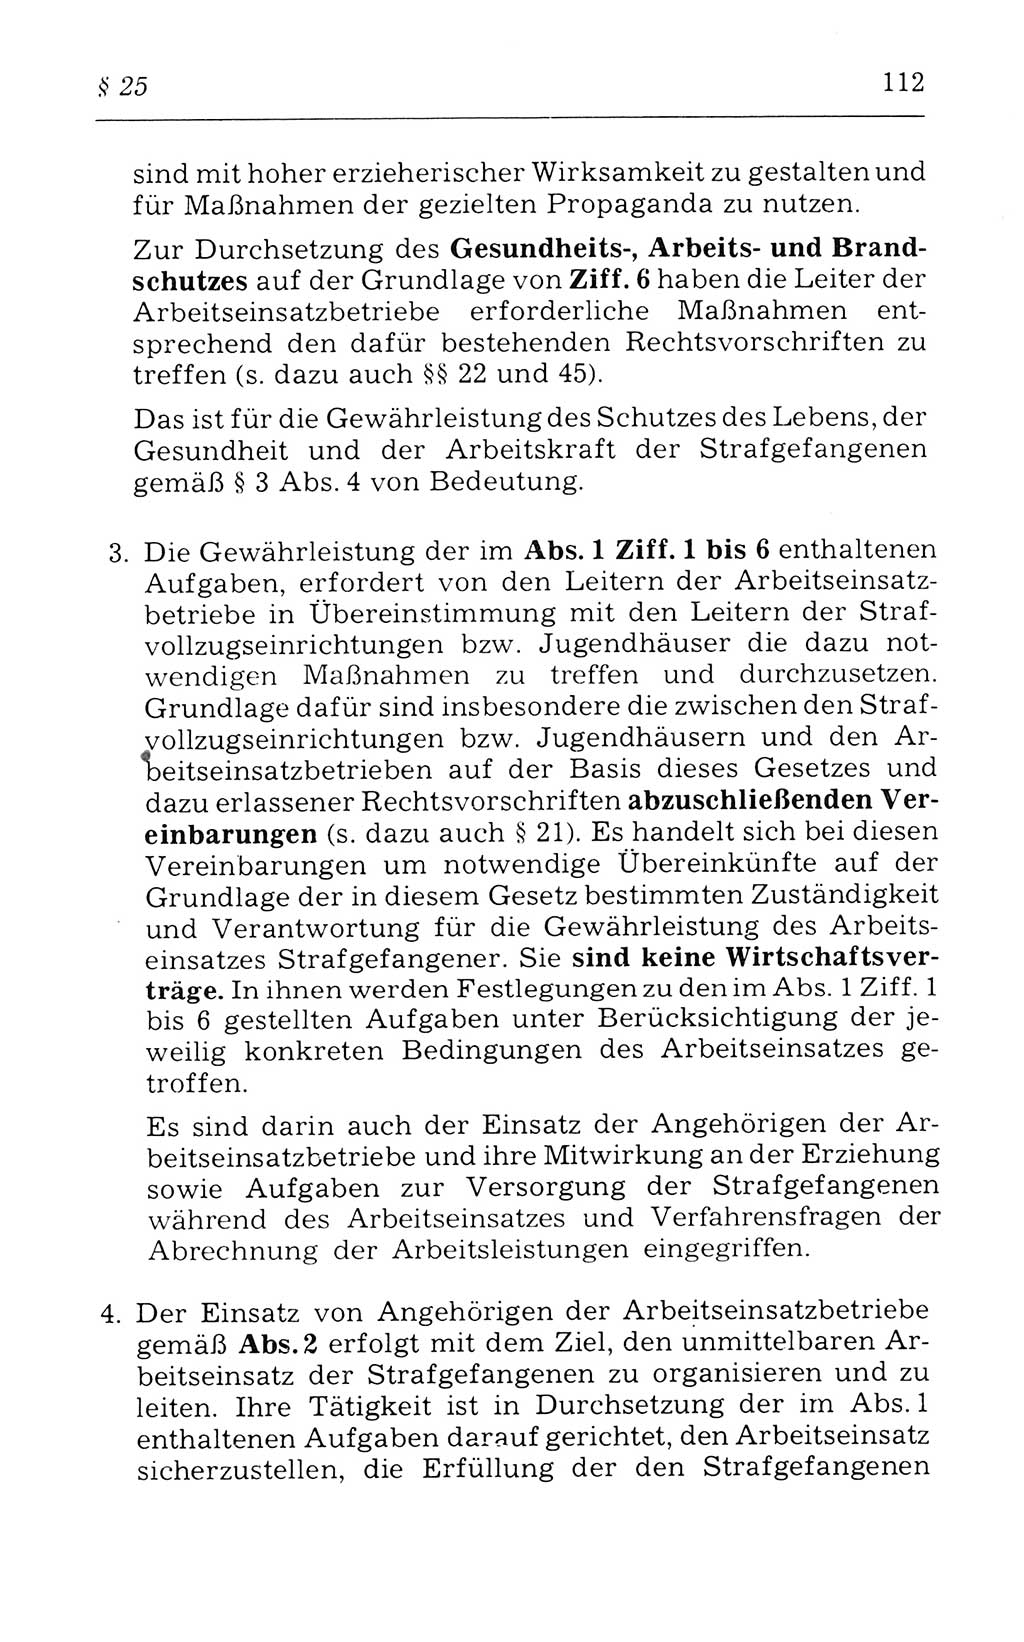 Kommentar zum Strafvollzugsgesetz [(StVG) Deutsche Demokratische Republik (DDR)] 1980, Seite 112 (Komm. StVG DDR 1980, S. 112)